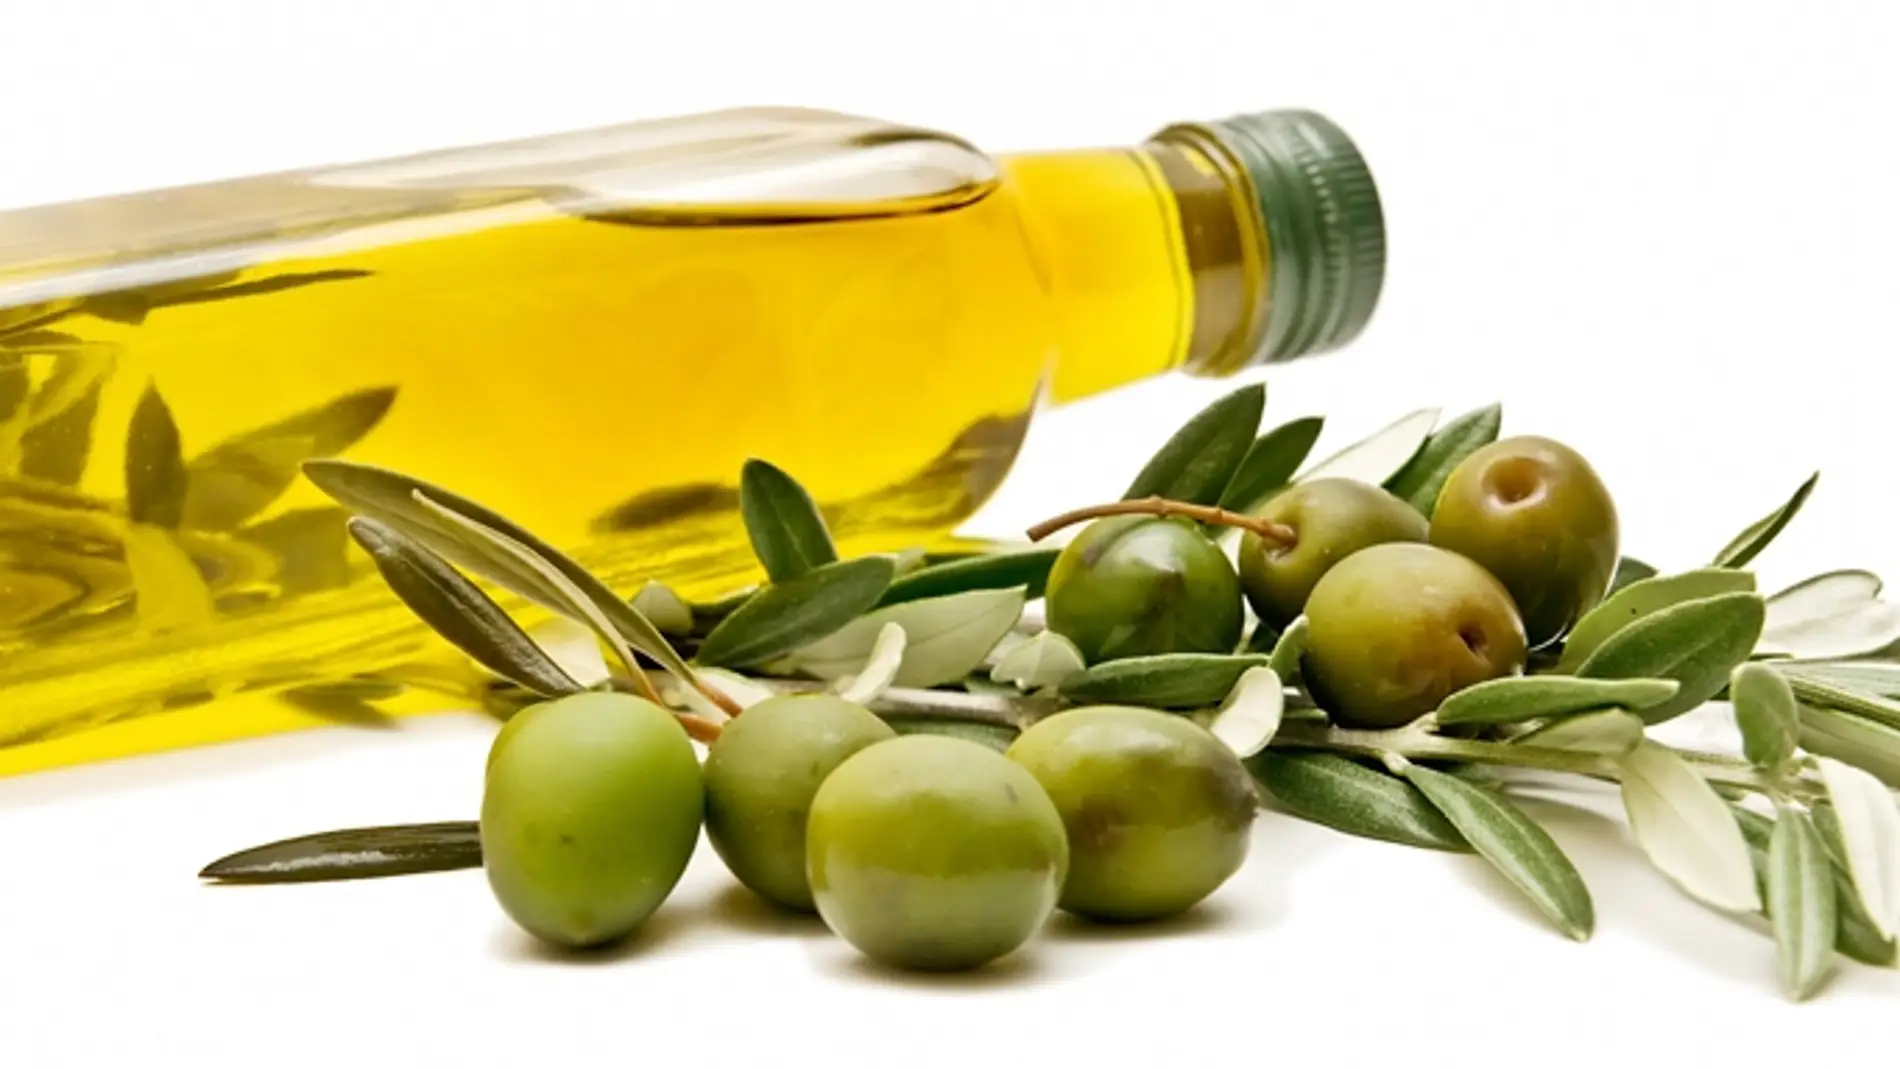 aceite-oliva